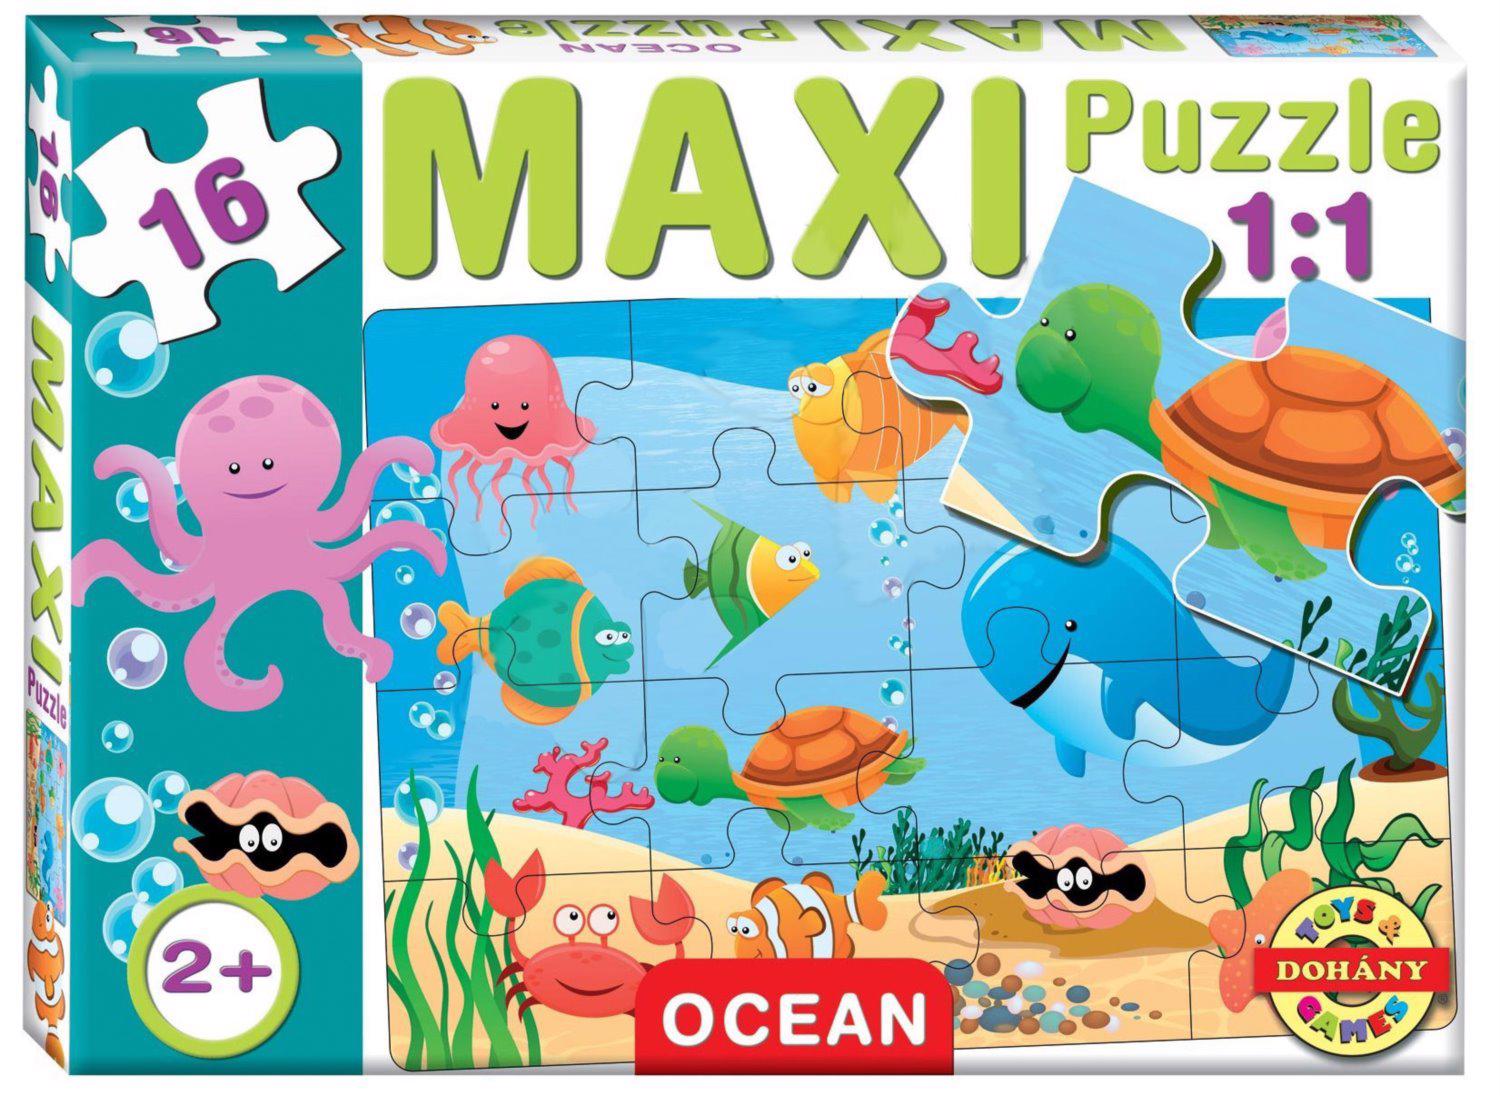 Puzzle Maxi Puzzel Ocean 16